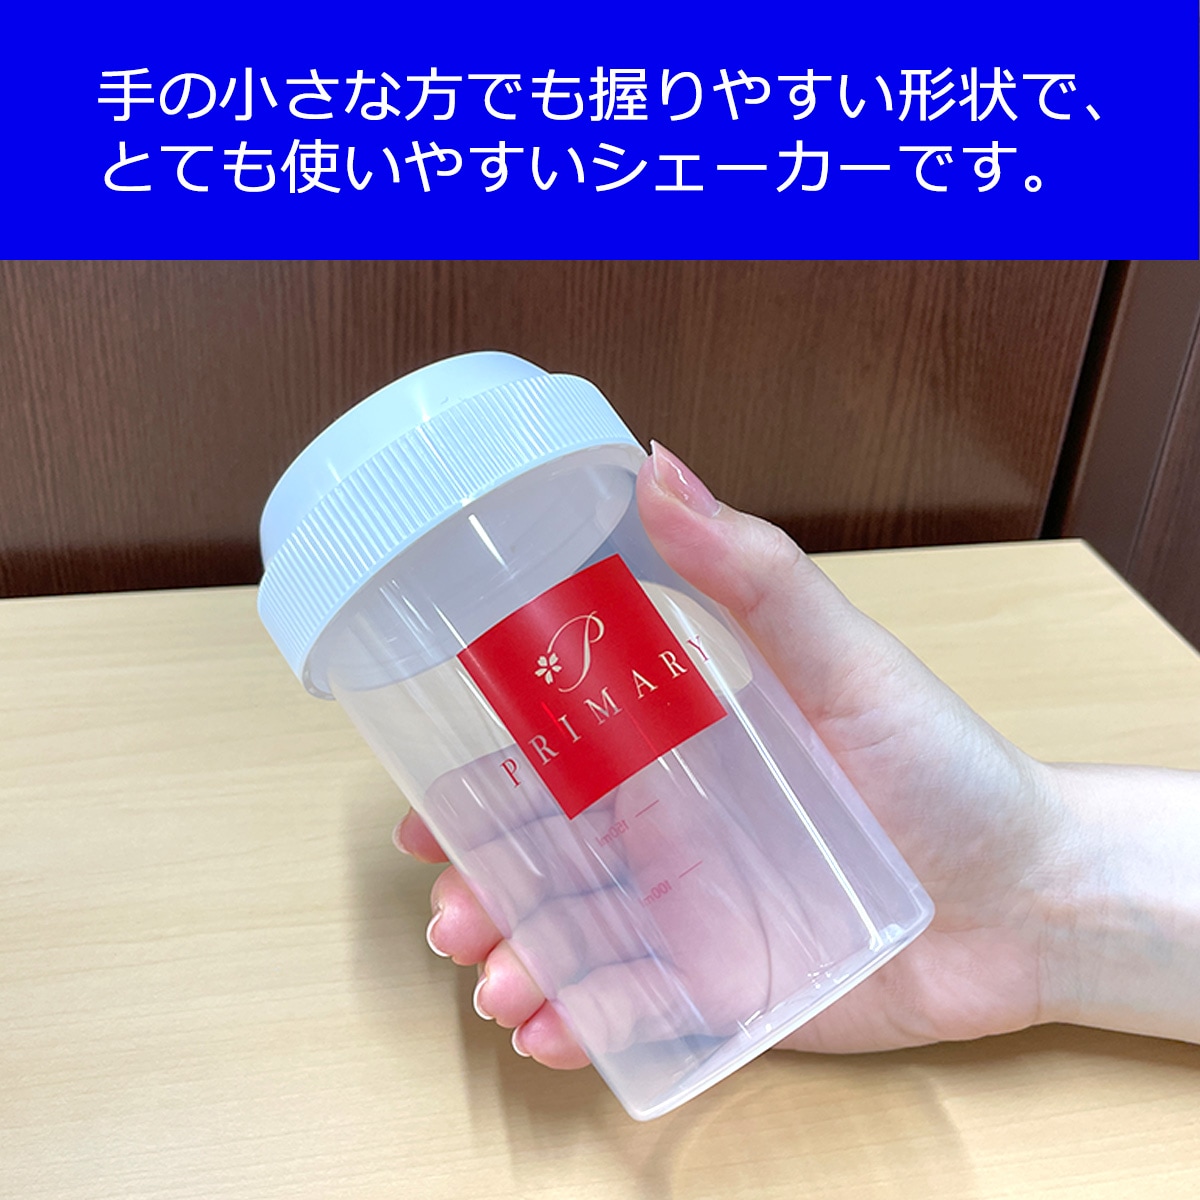 【プライマリー】プロテイン シェイカー シェーカー ボトル 可愛い コンパクト サイズ 300ml 持ち運び 便利 漏れ防止 洗いやすい 開け閉めしやすい 目盛り付き 日本製 BPAフリー （グリーン）